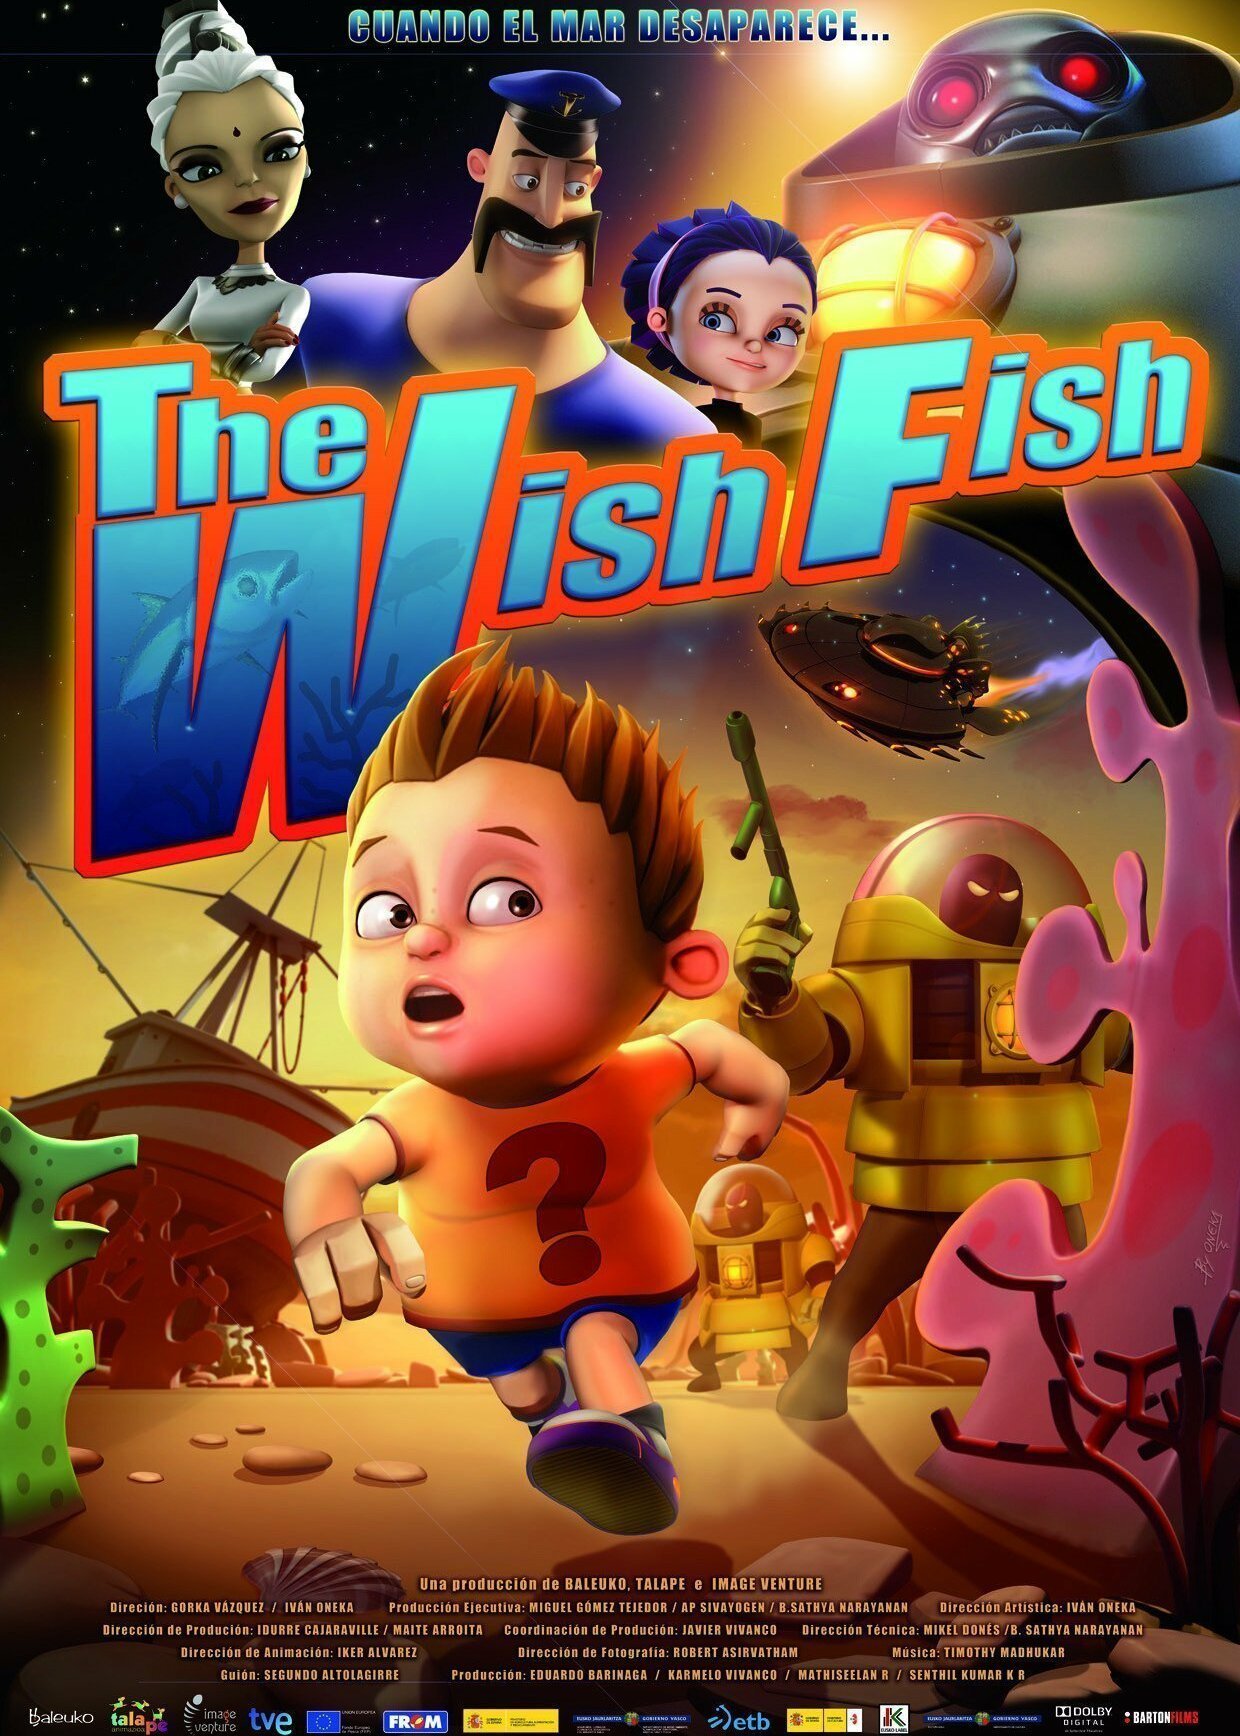 The Wish Fish (El pez de los deseos)